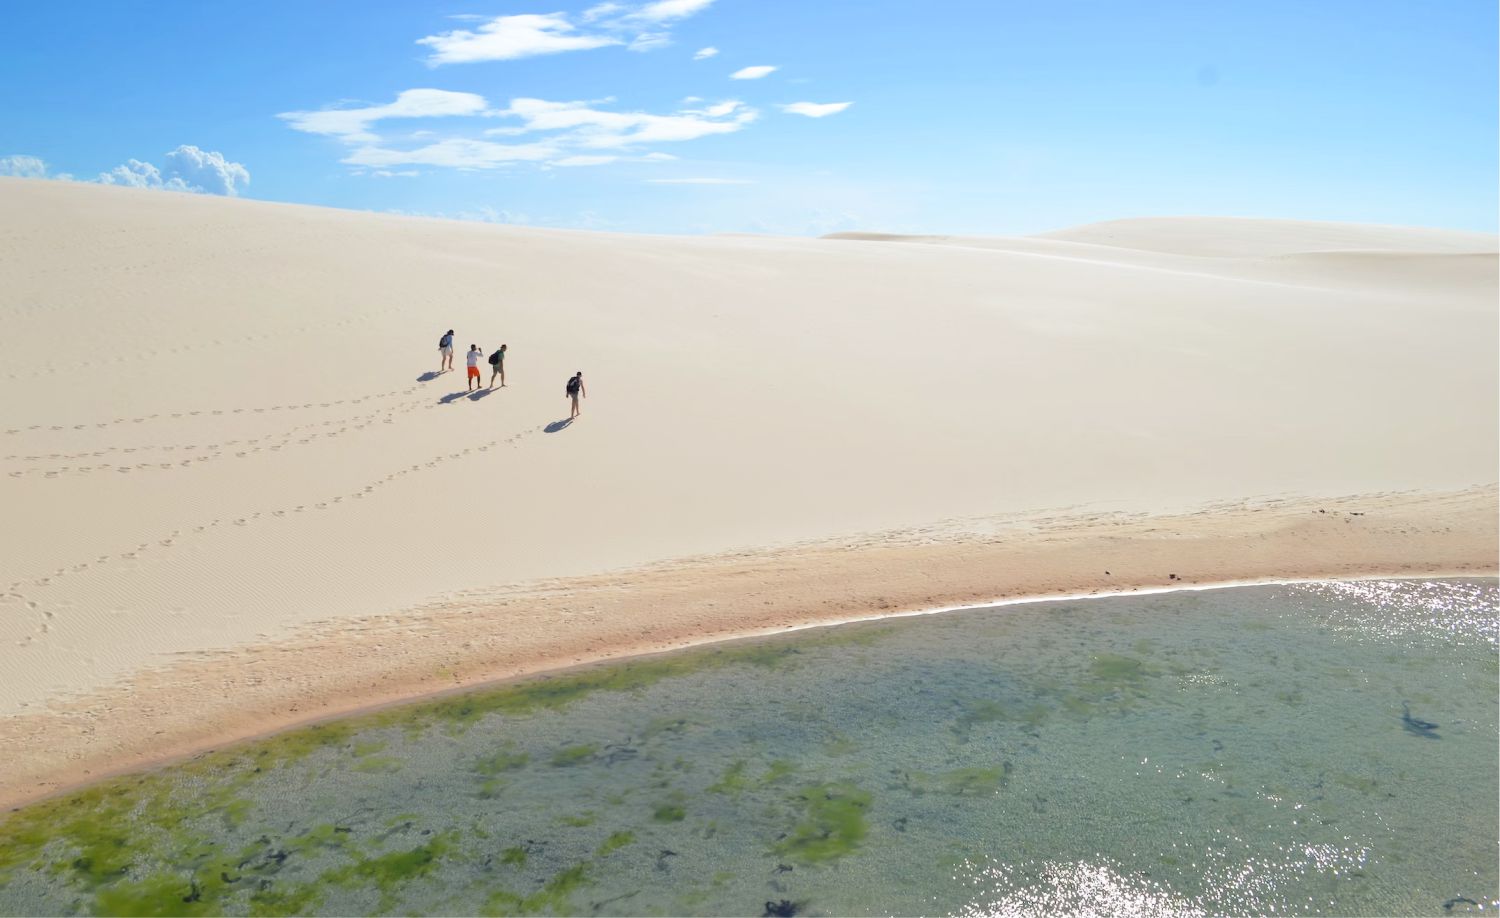 Lencois Maranhenses - khám phá vẻ mê hoặc của hàng trăm hồ nước xanh ngọc giữa sa mạc - Ảnh 5.